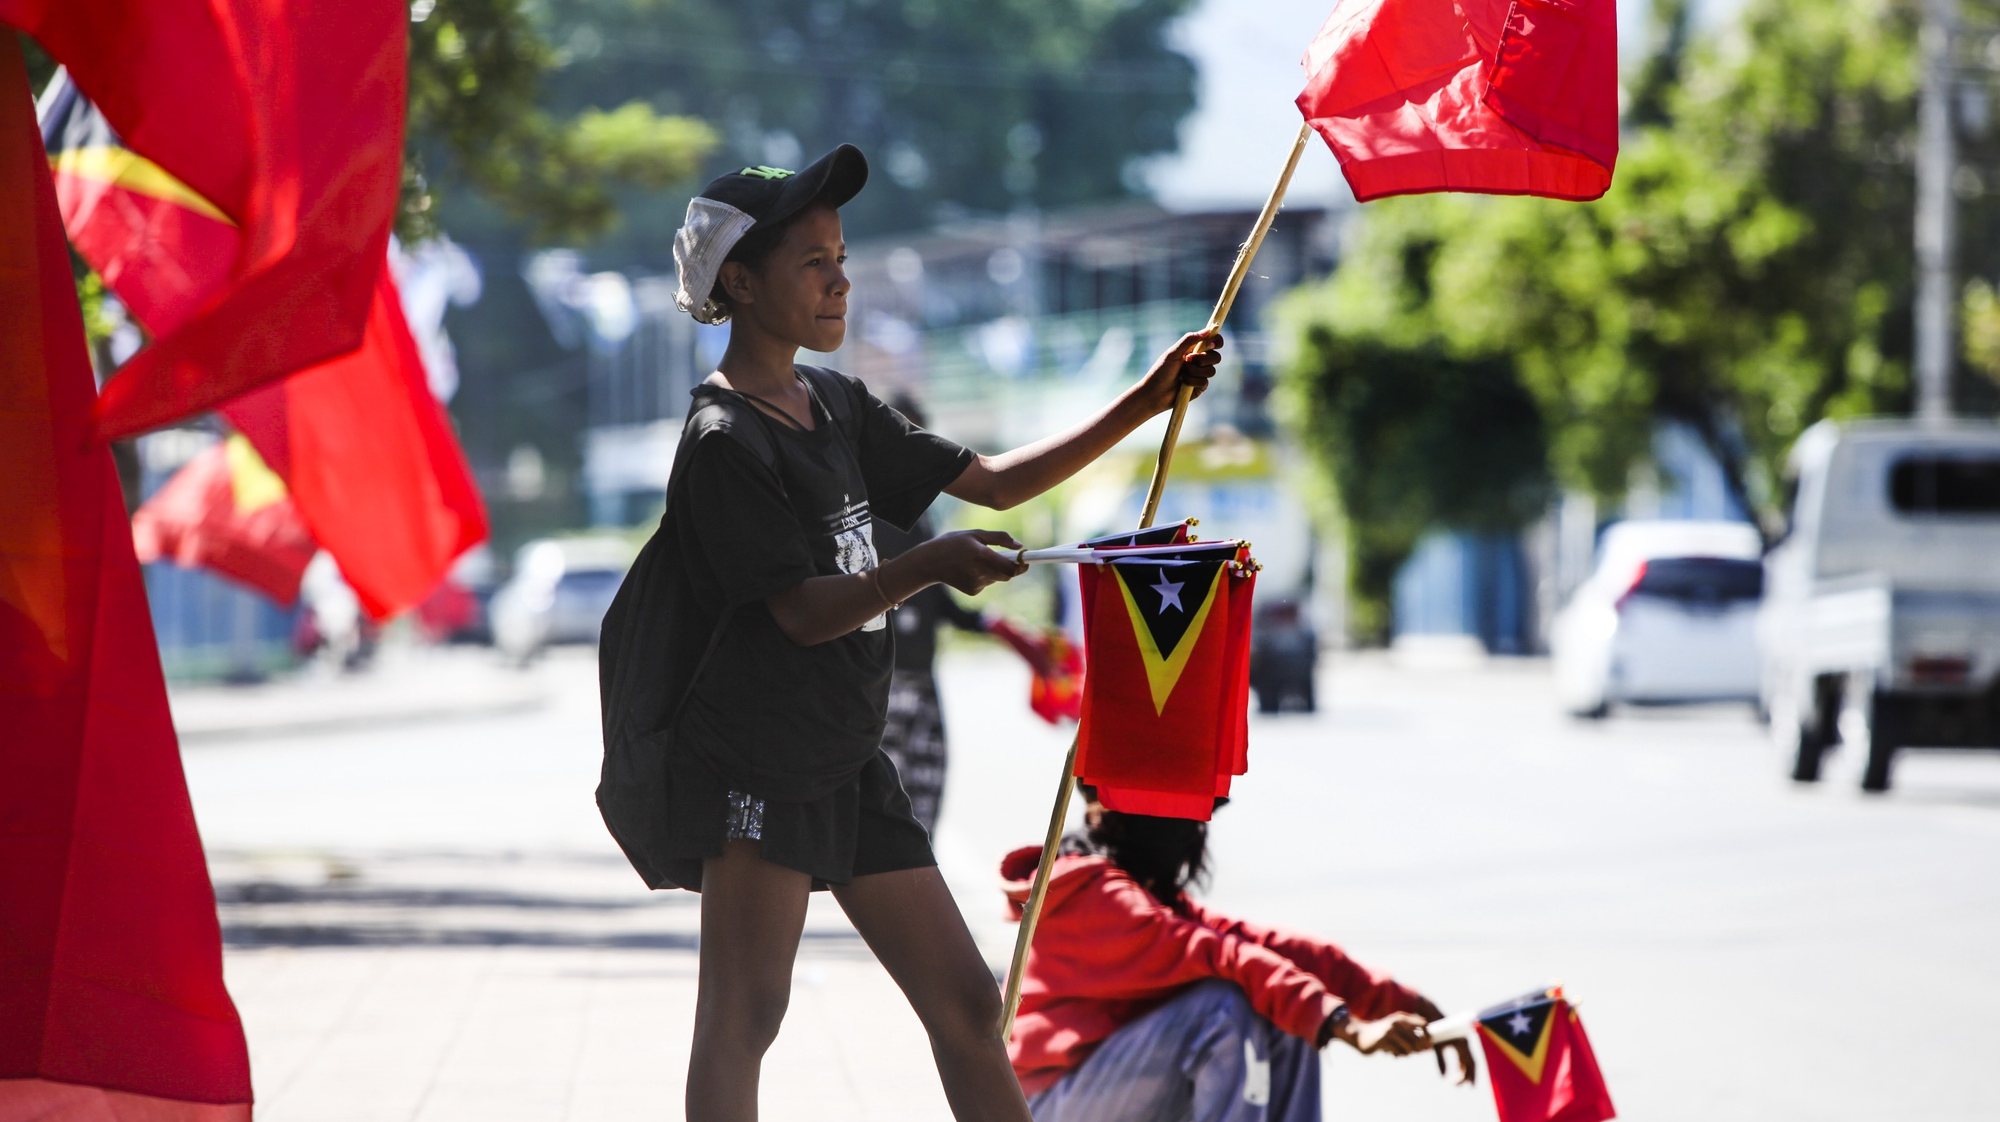 As cores da campanha para as legislativas chegaram a finalmente a Díli, depois de percorrer o país, numa semana crucial que junta a mobilização dos partidos às celebrações da Restauração da Independência de Timor-Leste. Dili, 14 de maio de 2023. (ACOMPANHA TEXTO DO DIA 15 DE MAIO DE 2023). ANTÓNIO SAMPAIO/LUSA